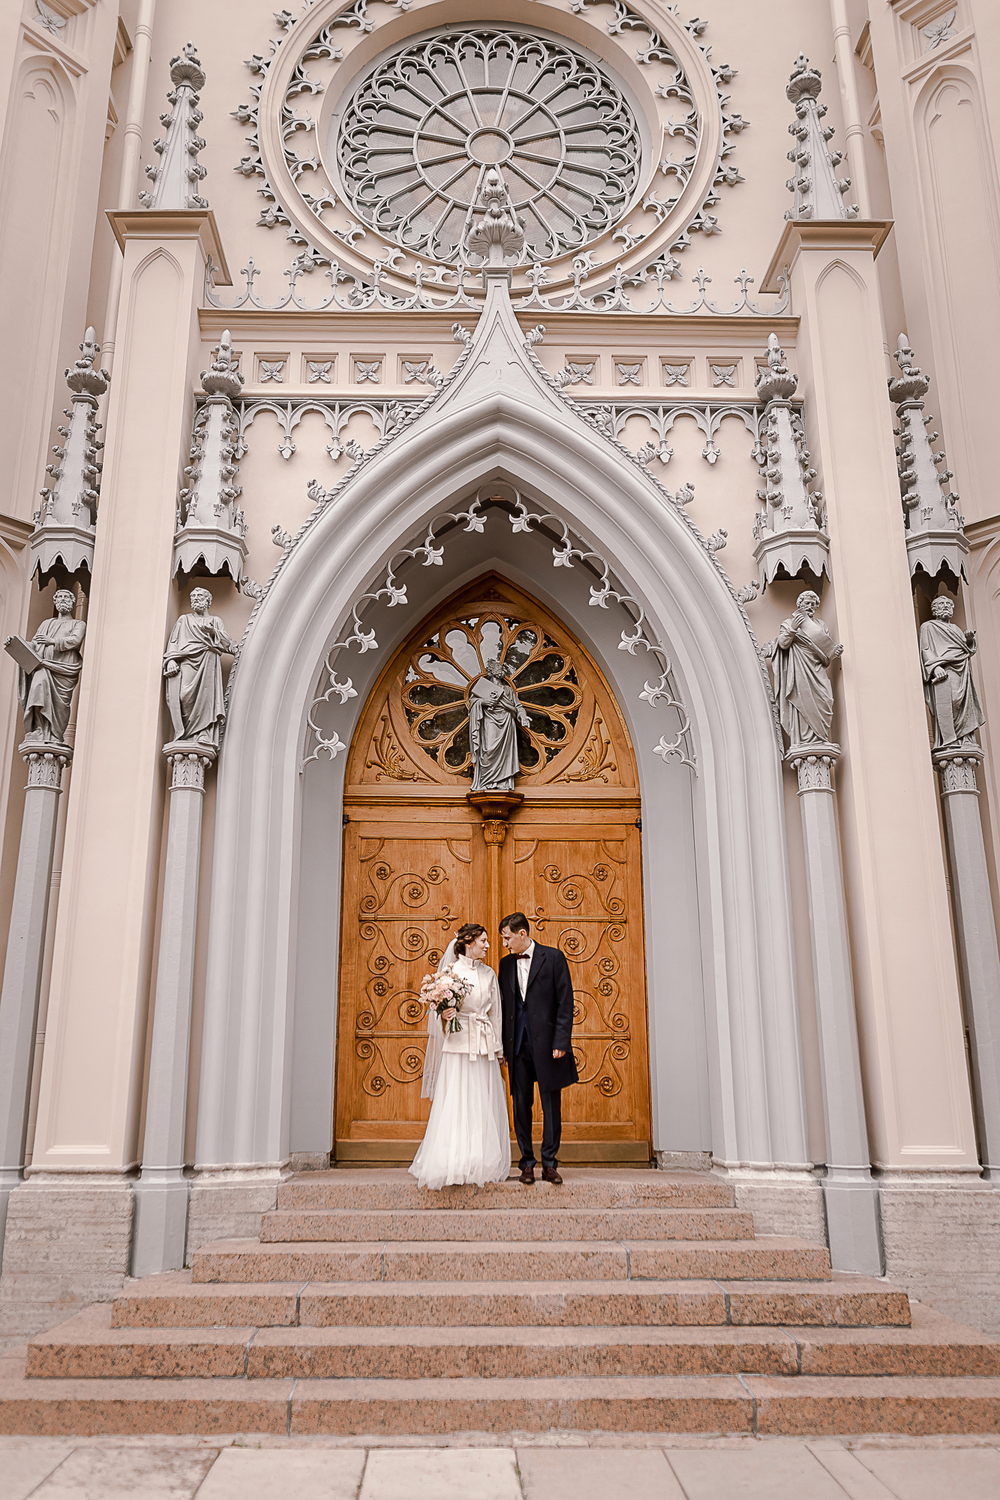 Фотосессия на венчание в церкви и храме Санкт-Петербурга | Фотограф — Маша Гольцман